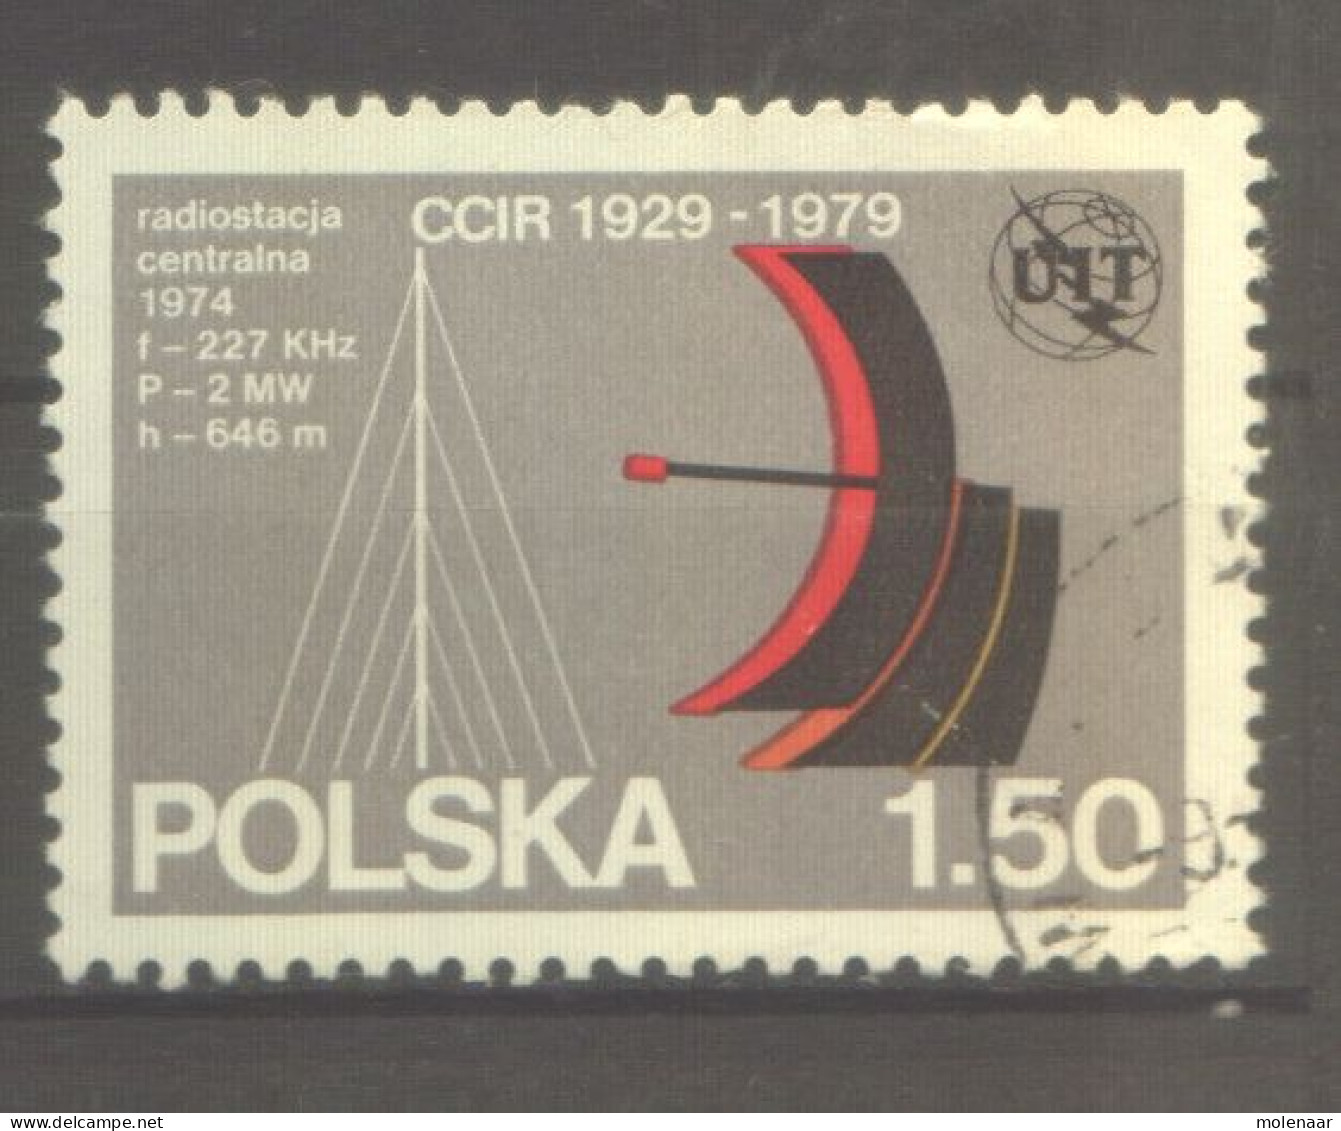 Postzegels > Europa > Polen > 1944-.... Republiek > 1971-80 > Gebruikt  2642 (12173) - Usados